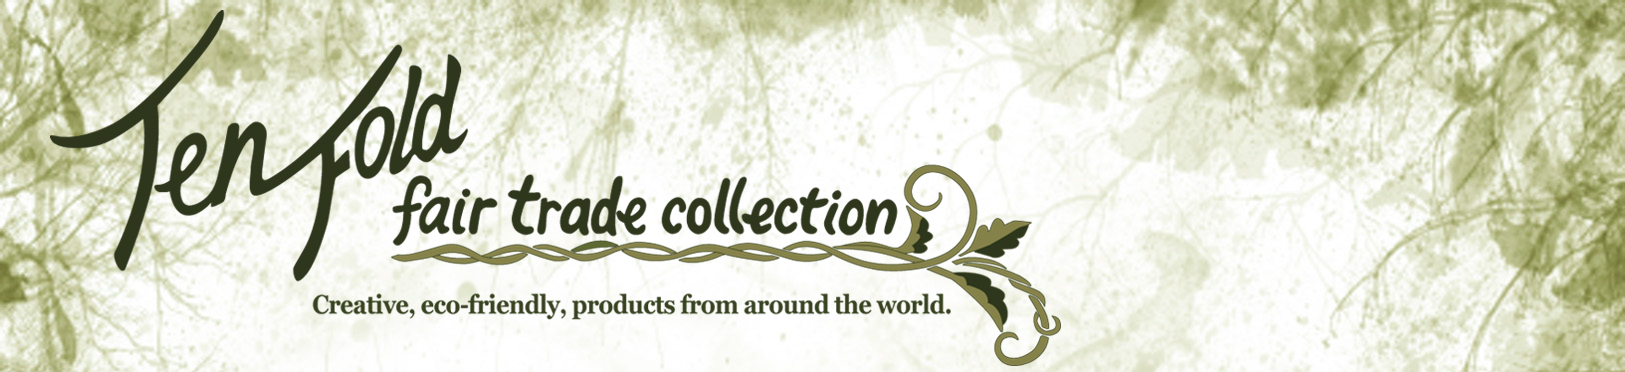 Tenfold Fair Trade Collection logo